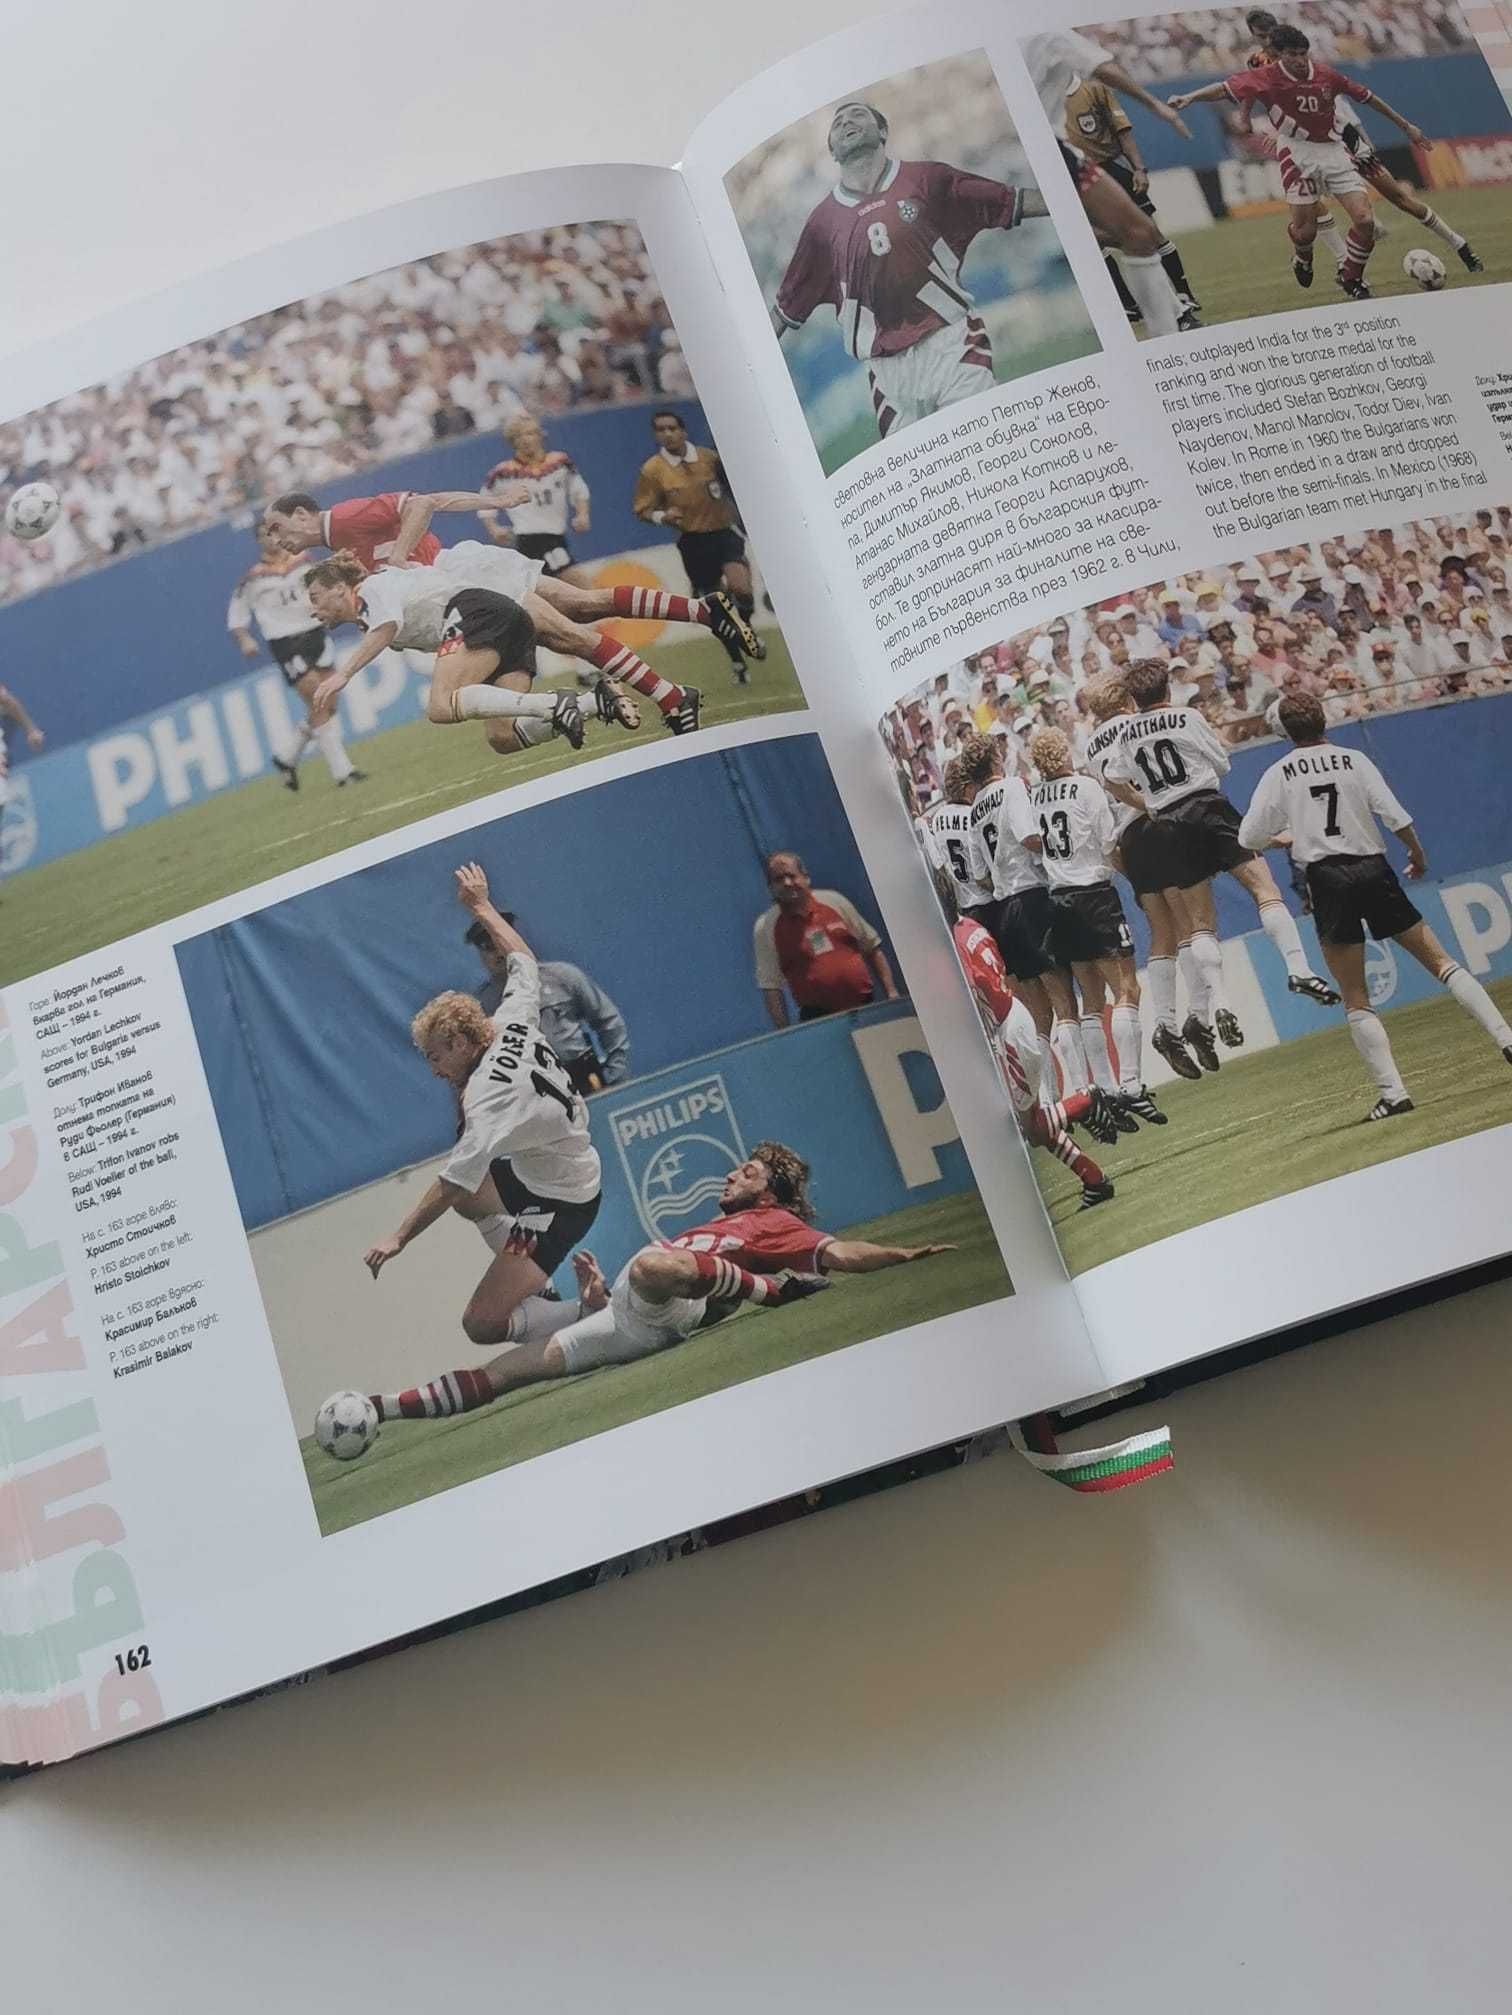 Книга-албум „Българският спорт | Bulgarian Sport“